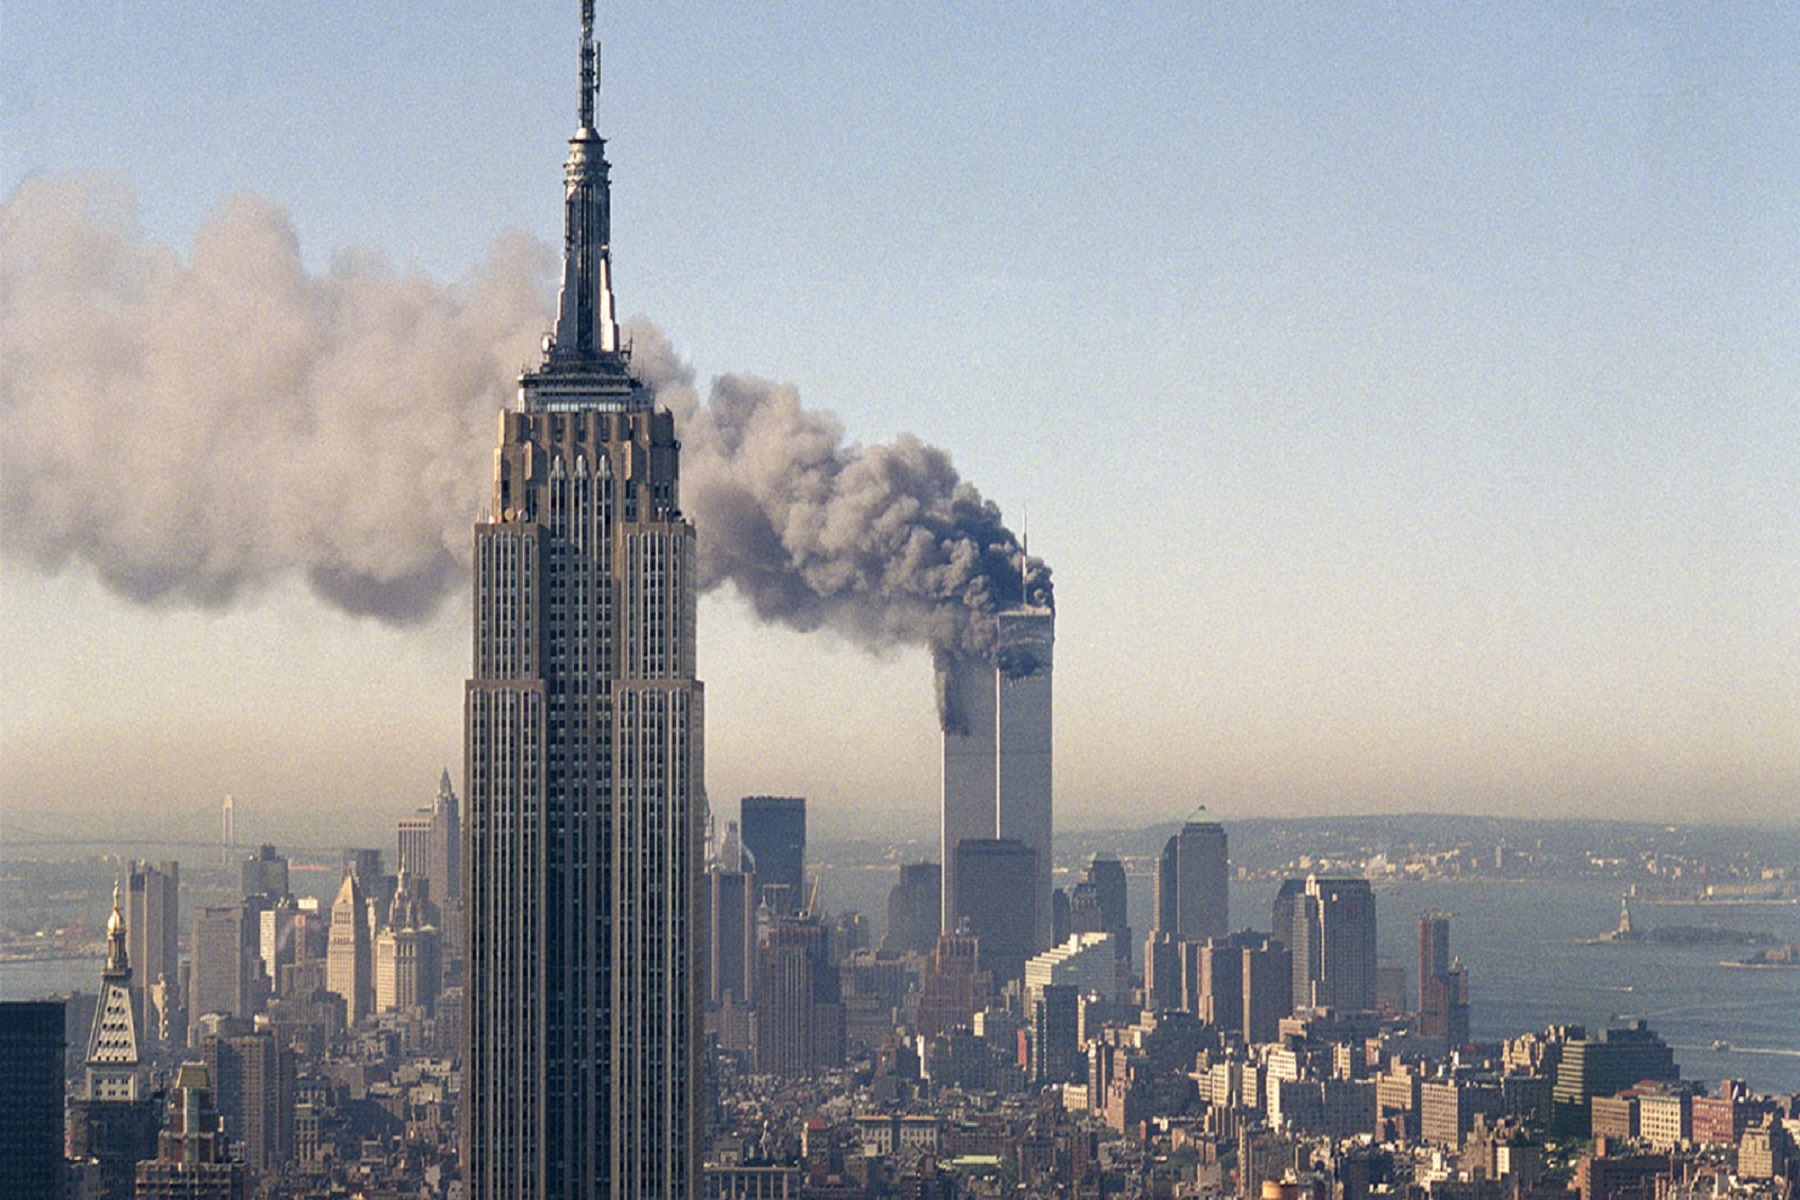 ΗΠΑ Δίδυμοι Πύργοι: Ποιες απειλές για την υγεία αντιμετώπισαν οι παρευρισκόμενοι στο χτύπημα της 11ης Σεπτεμβρίου;